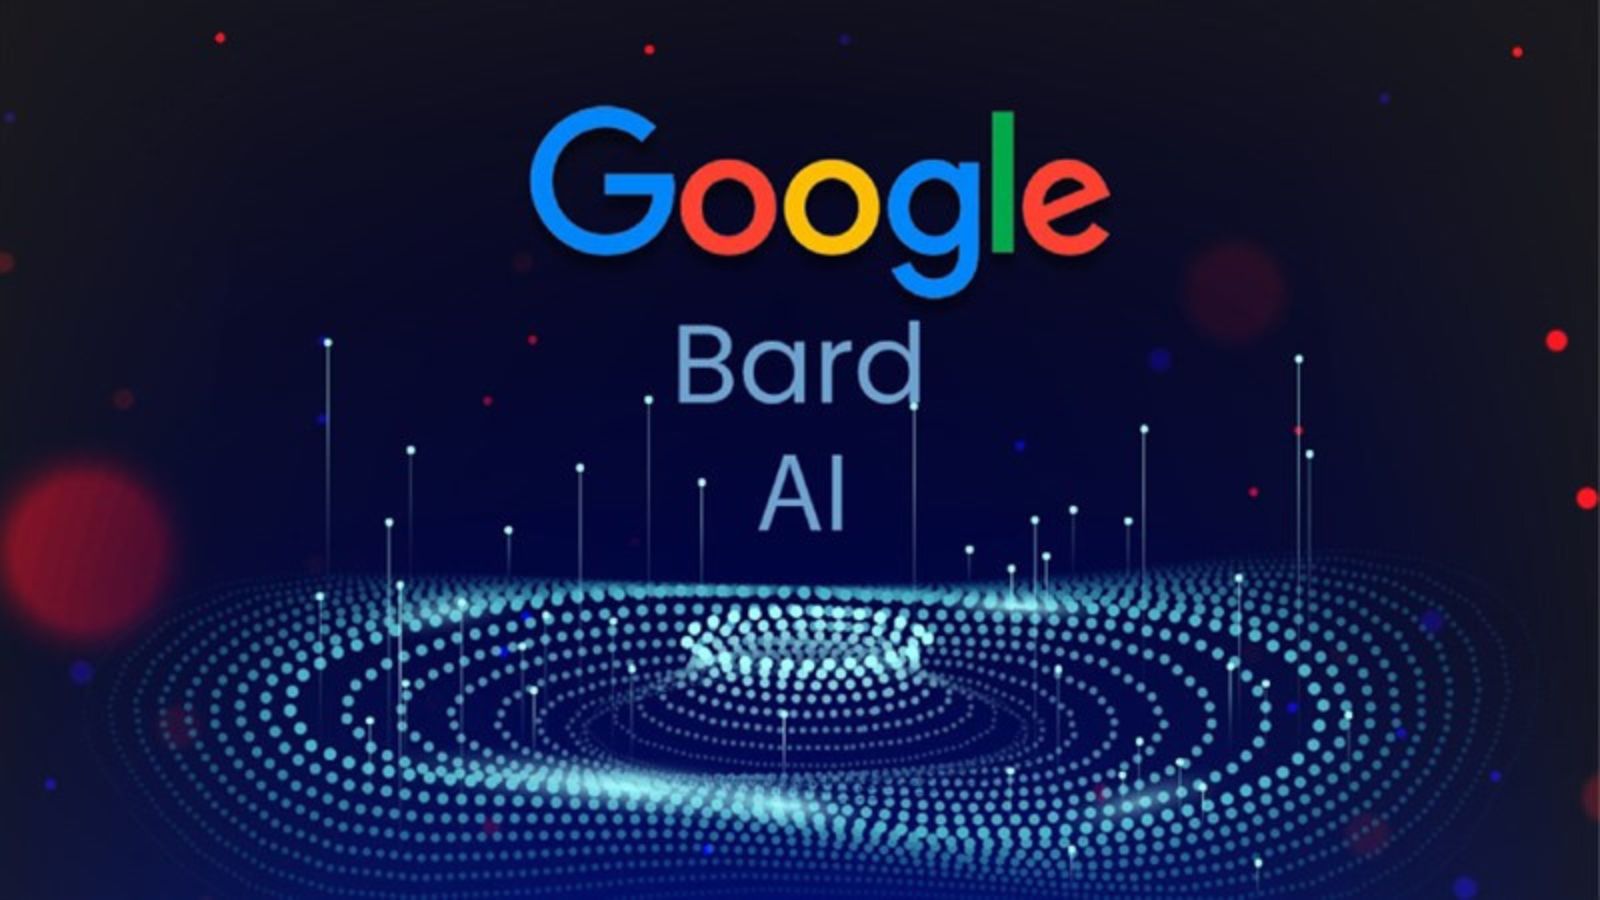 Google, è ufficiale l'arrivo dell'IA Bard in Italia